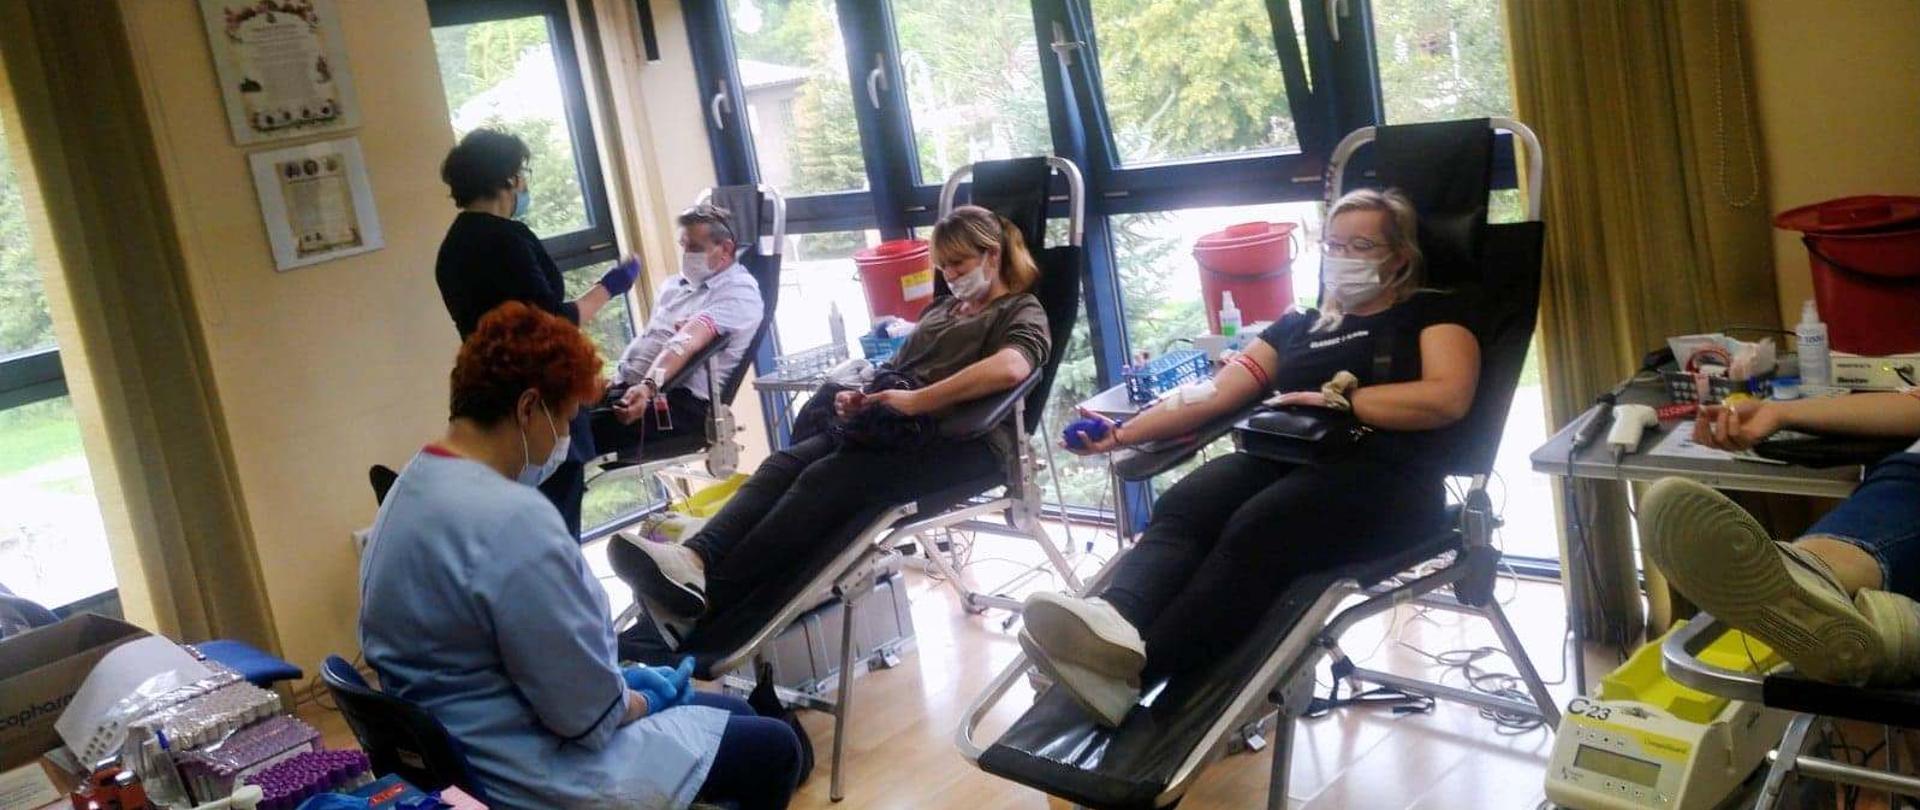 Krwiodawcy na fotelach oddają krew